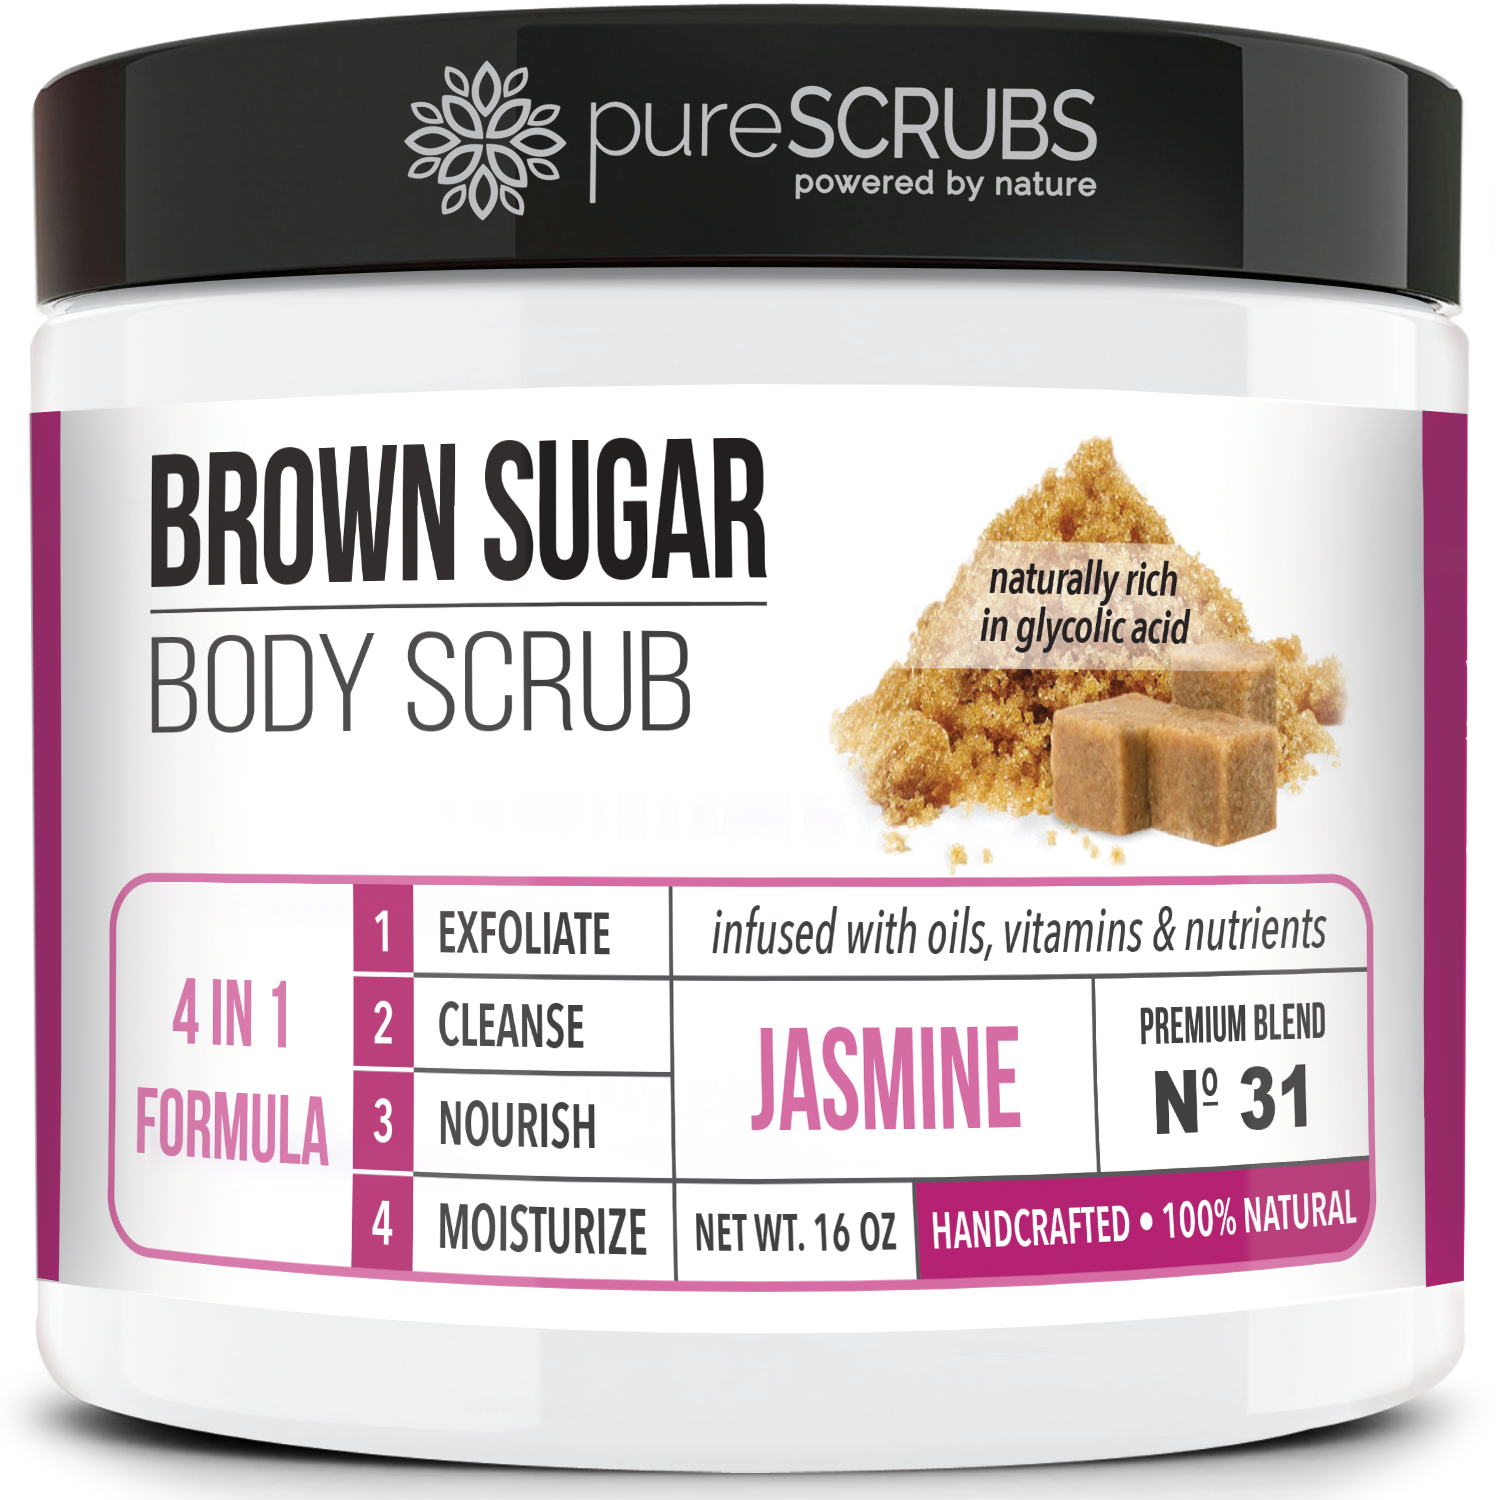 Jasmine Body Scrub / Brown Sugar / Premium Blend #31